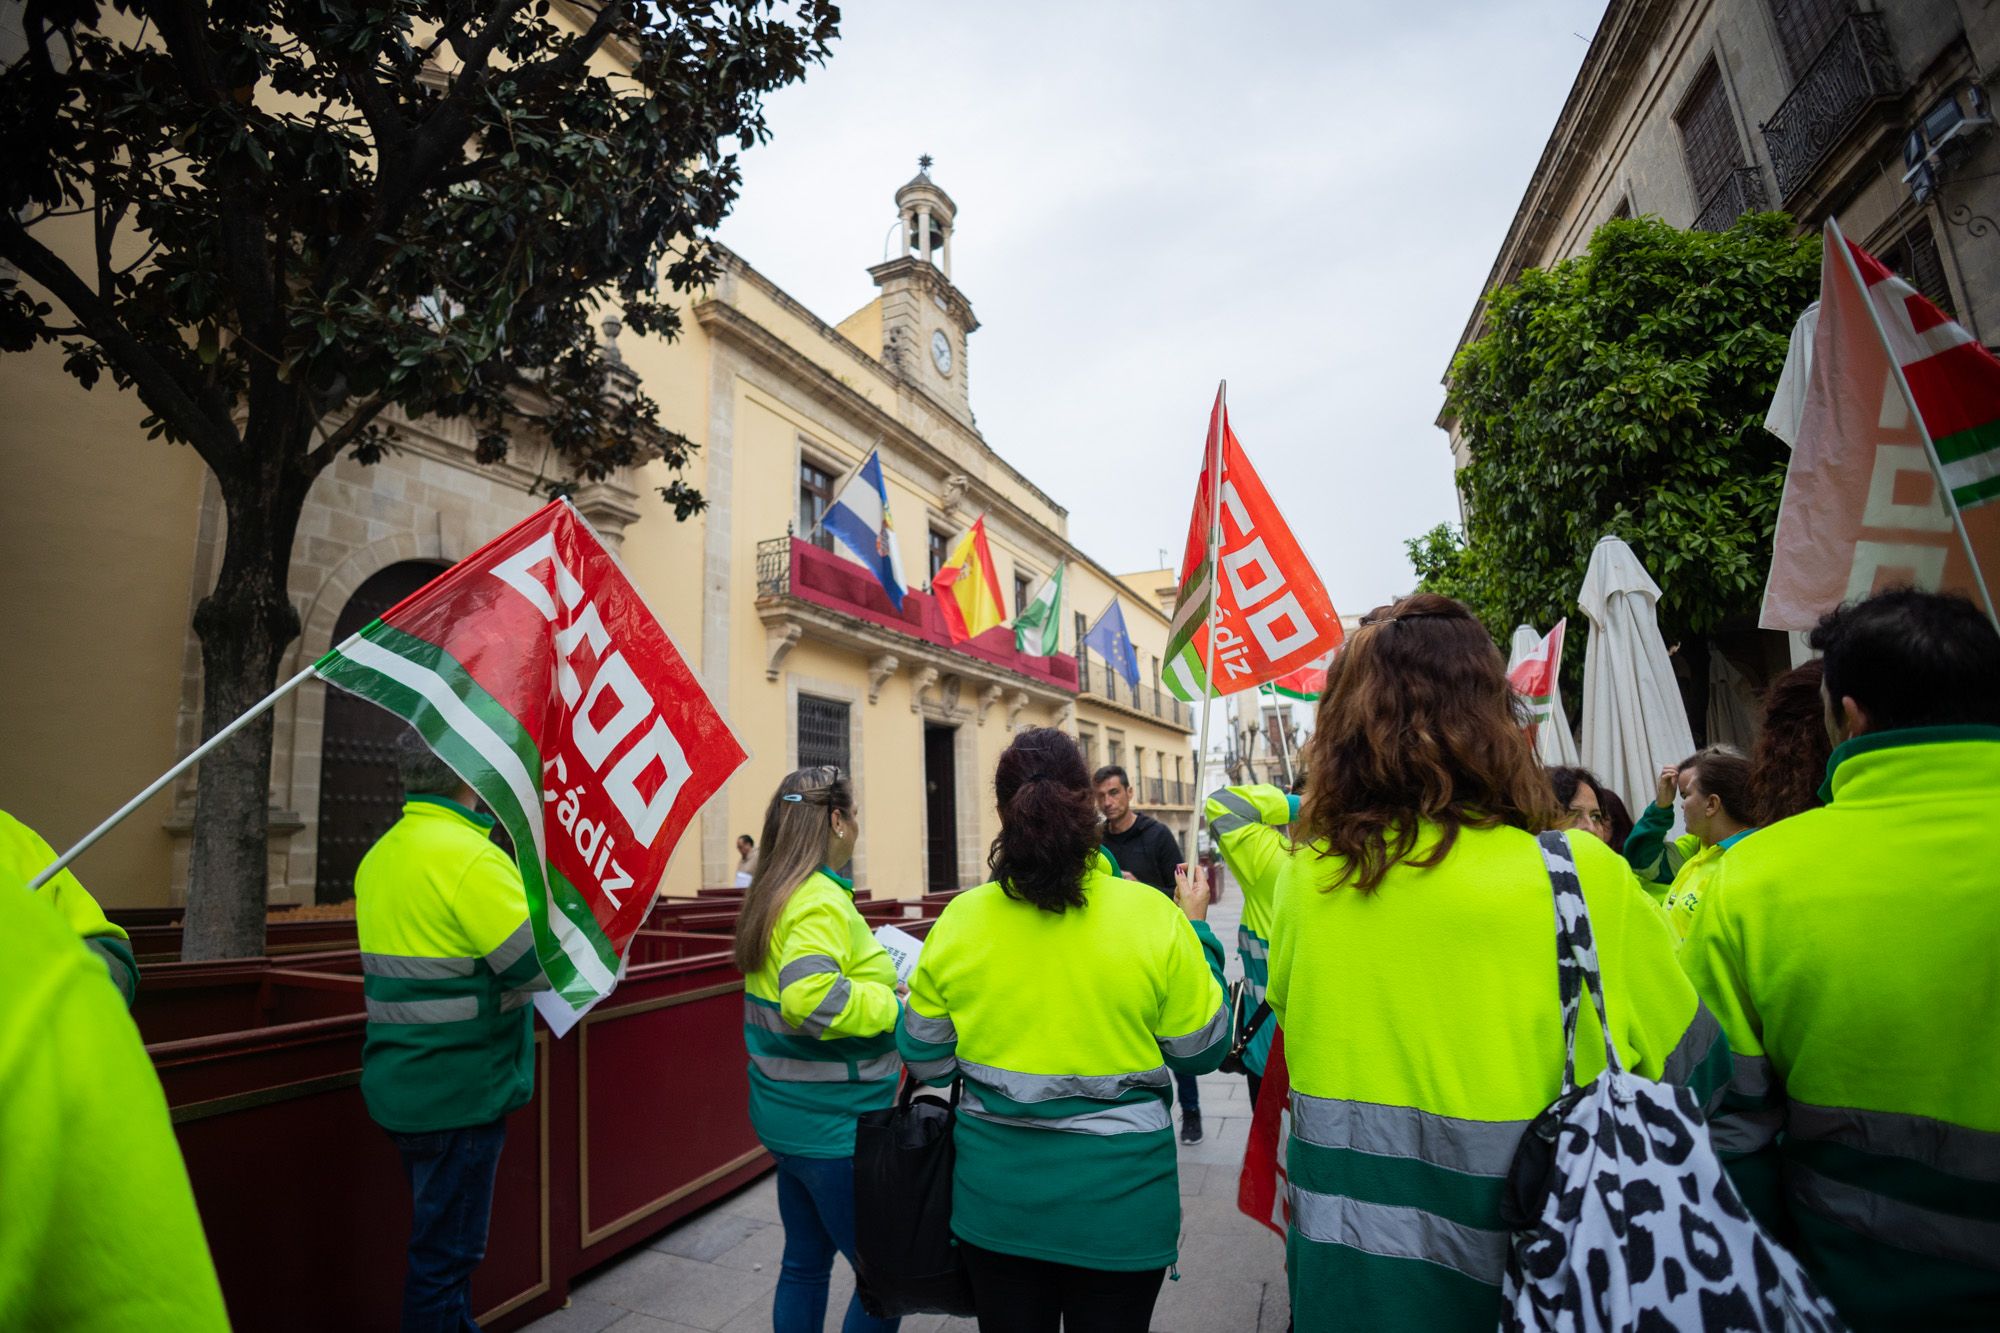 Trabajadores de Las Calandrias, protestando frente al pleno de Jerez.